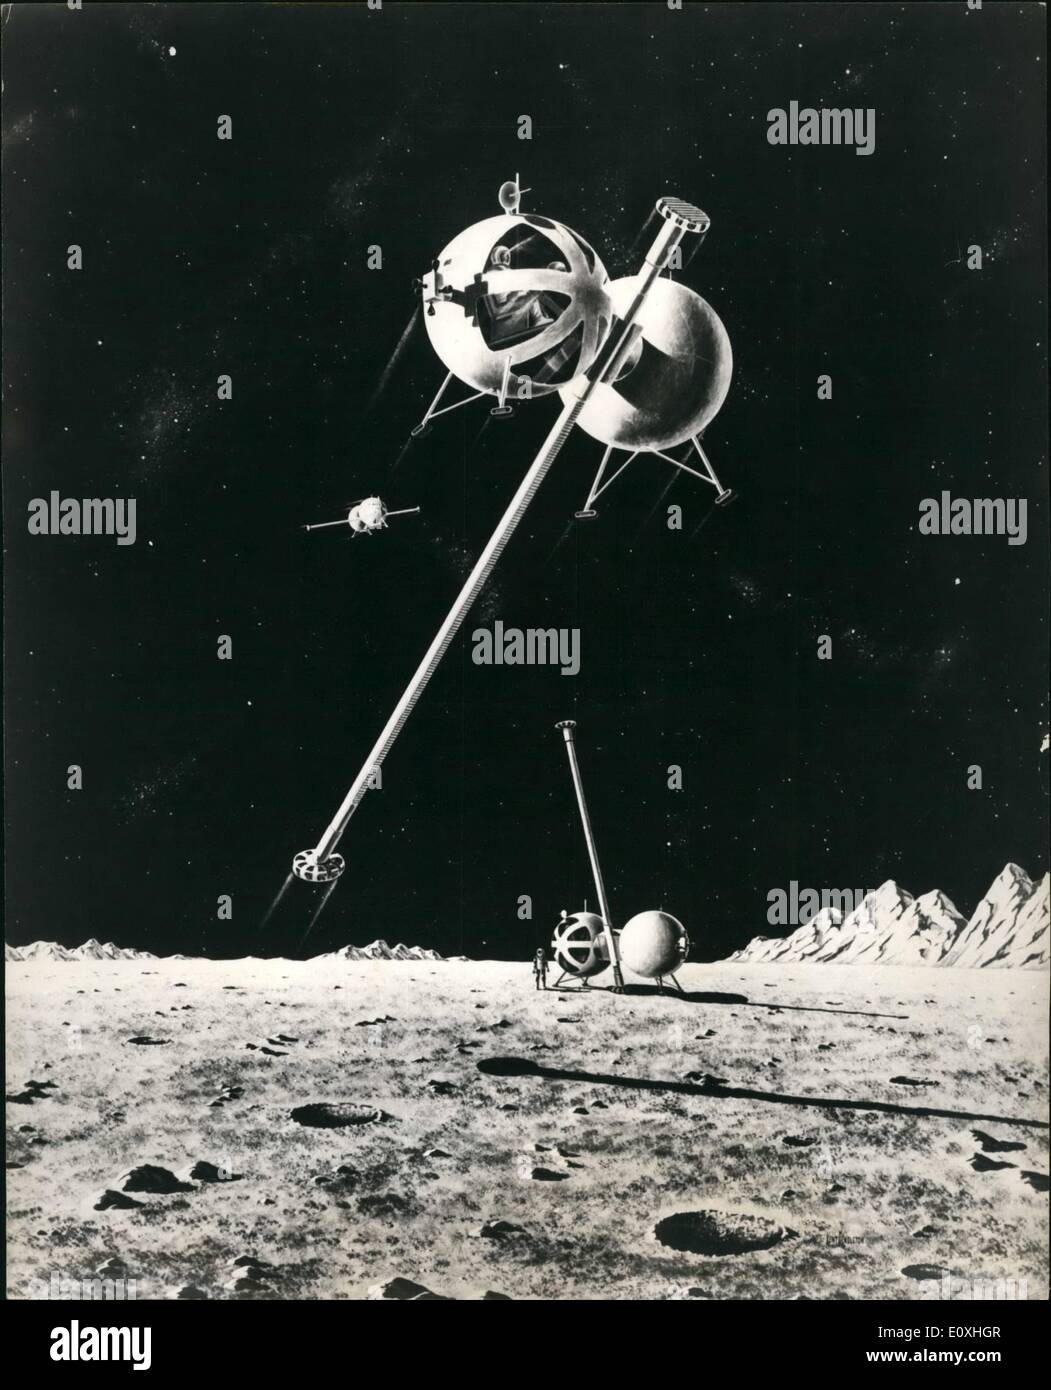 1. Januar 1967 - Lunar Transporter verwenden Prinzip der Pogo Stick: Synnyvile, Falifornia: seitdem Männer zuerst davon geträumt, den Mond zu erforschen, sie haben davon geträumt, den Mond untersucht, sie haben zahlreiche Arten von Rädern, verfolgt und sogar zu Fuß-Maschinen für die Fortbewegung auf der Mondoberfläche untersucht worden. Ein einfaches Spielzeug von Generationen von Kindern genossen hat stellen die Idee für eine wissenschaftliche Studie, die buchstäblich lunar Rapid Transit-System bereitstellen konnte. Dr, Howard S Stockfoto